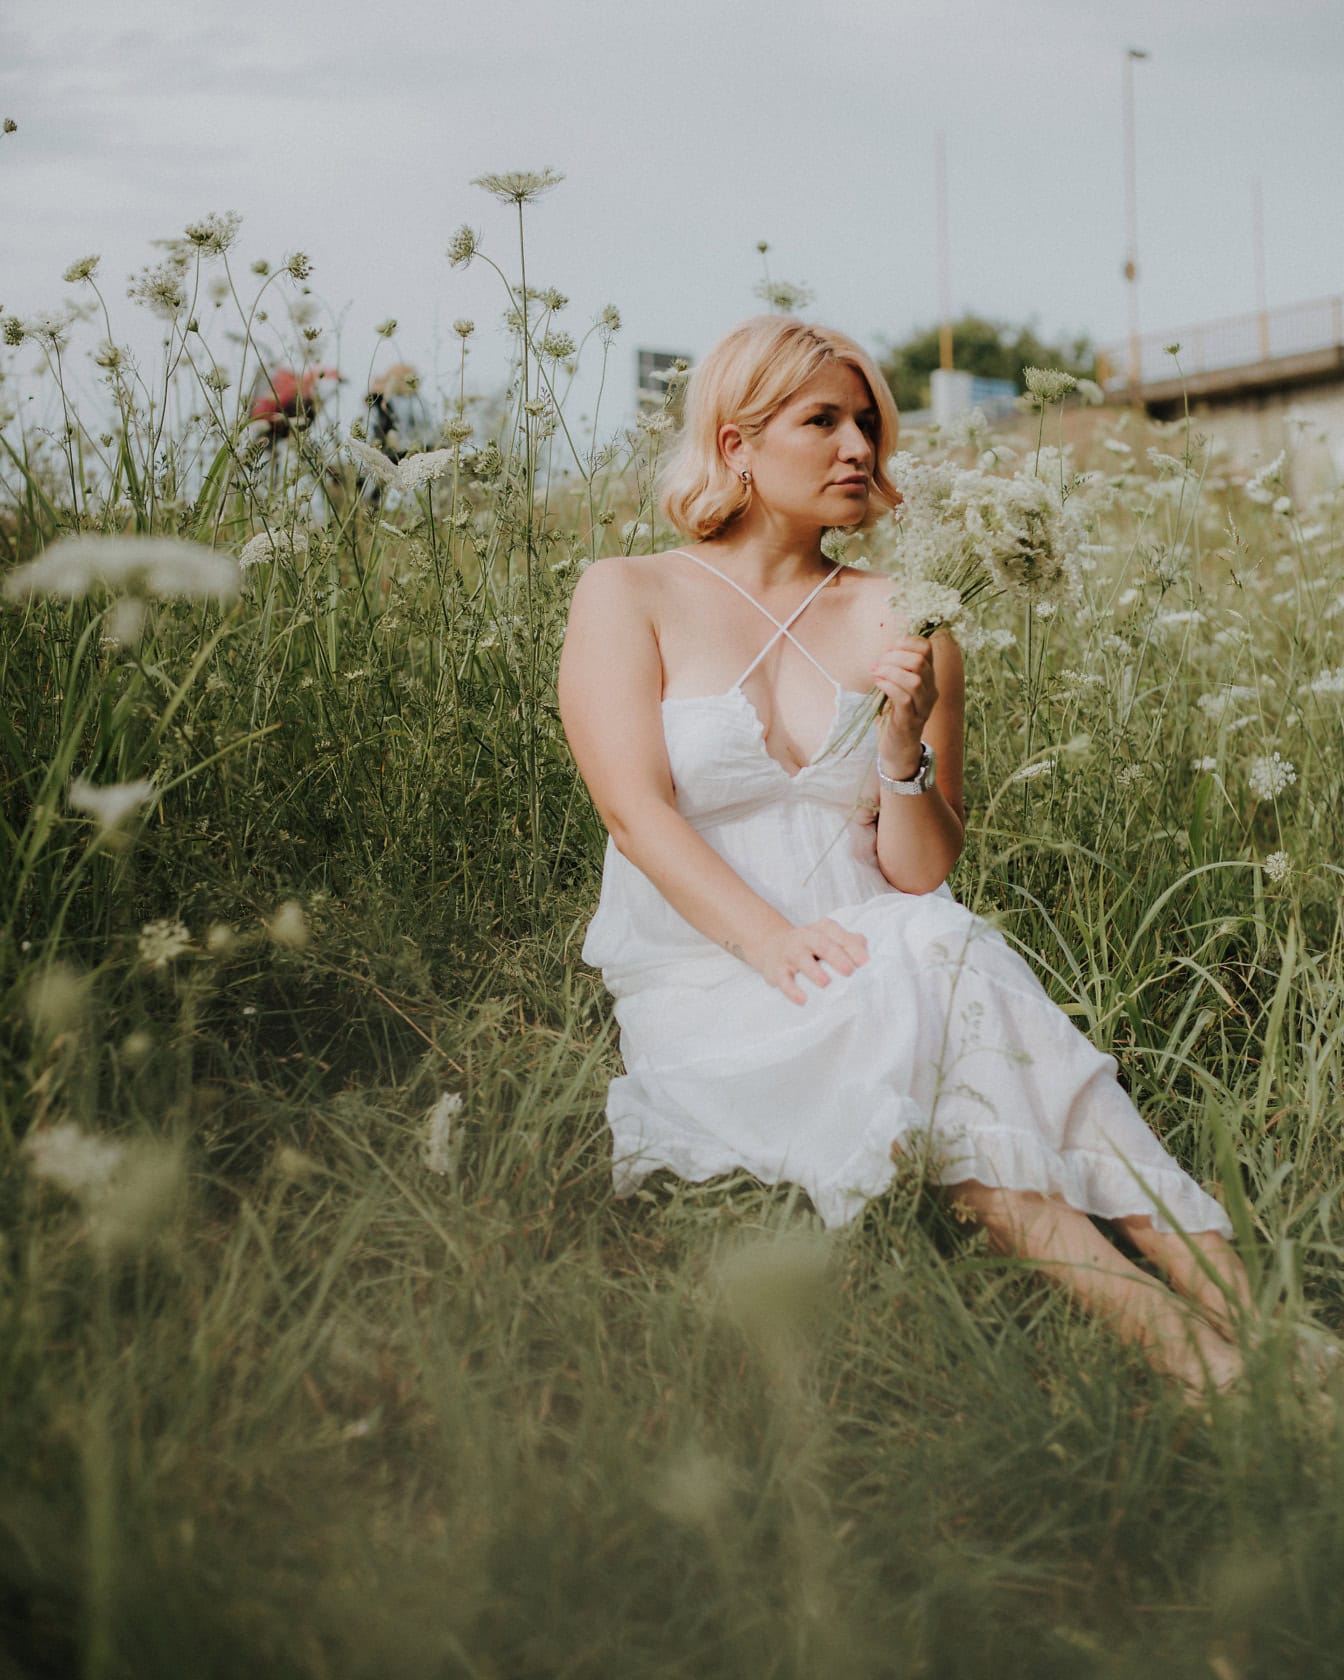 Çiçek tarlasında oturan beyaz kır tarzı gelinlik giymiş güzel bir kadın